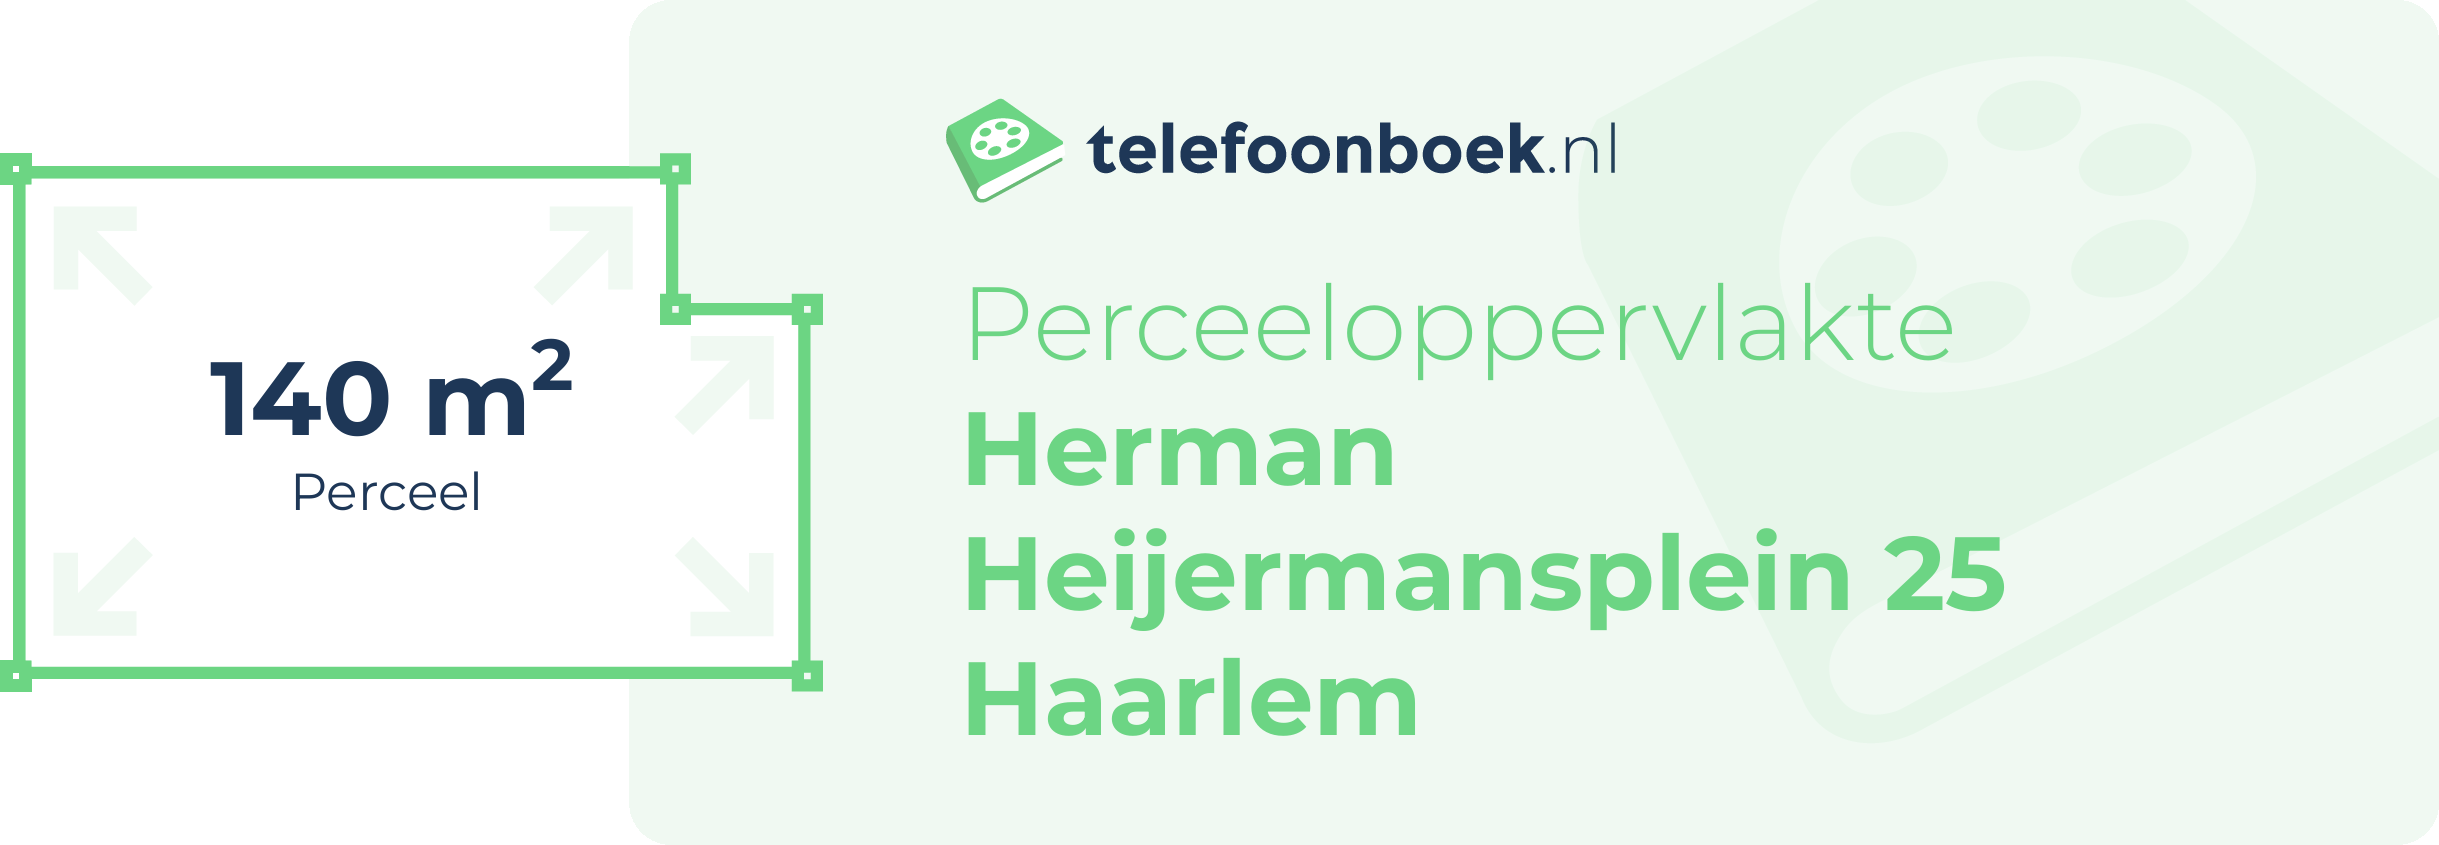 Perceeloppervlakte Herman Heijermansplein 25 Haarlem